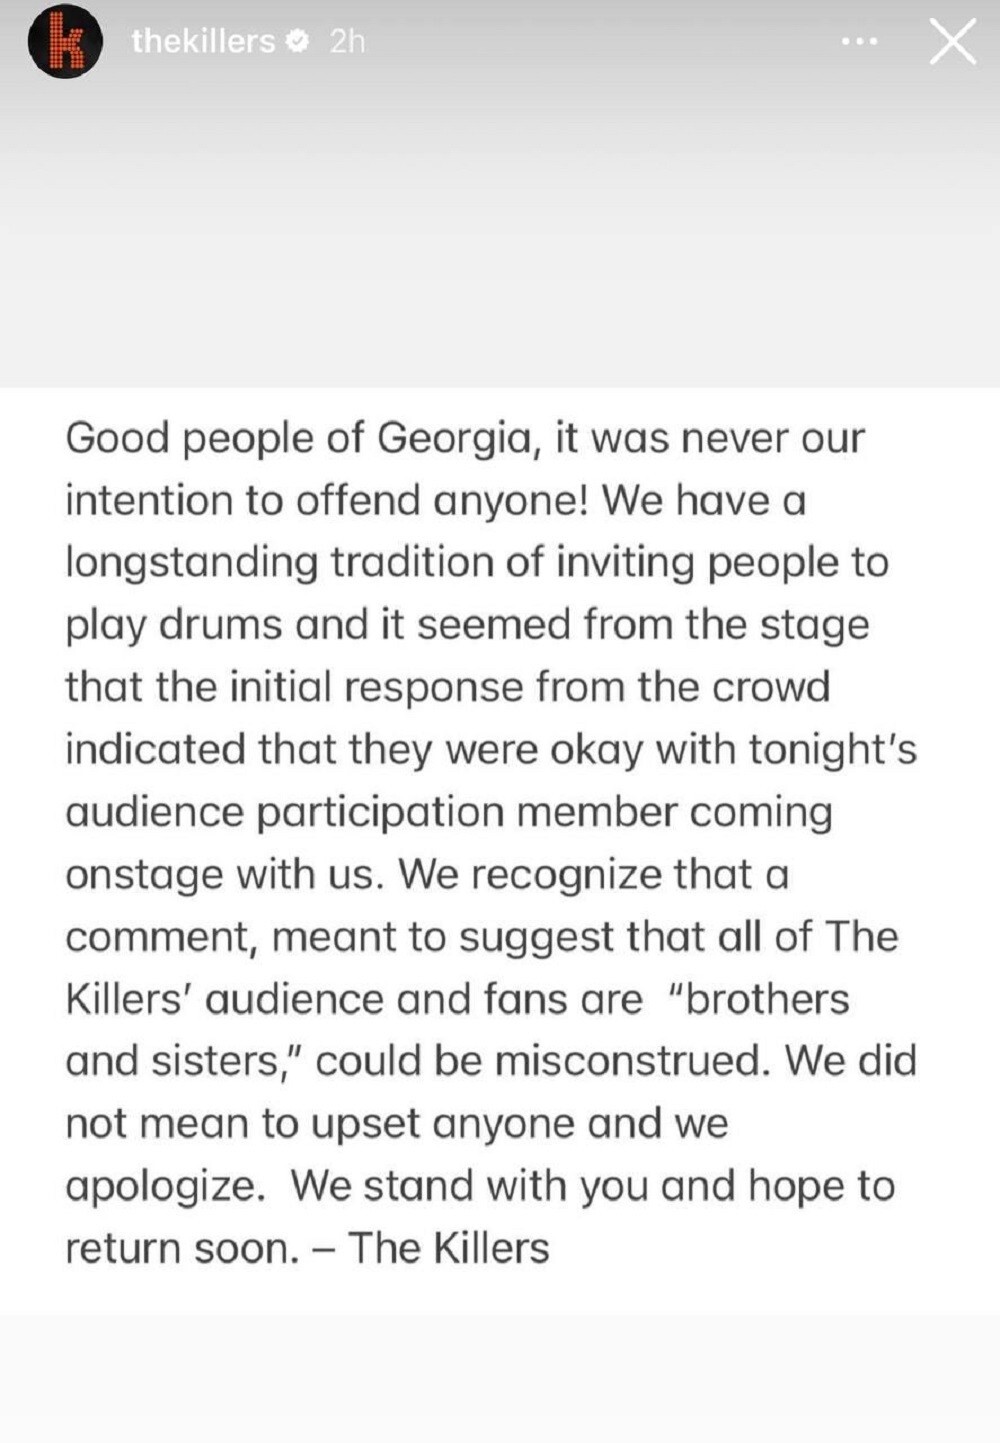 Посетители концерта The Killers в Грузии оказались недовольны русским барабанщиком